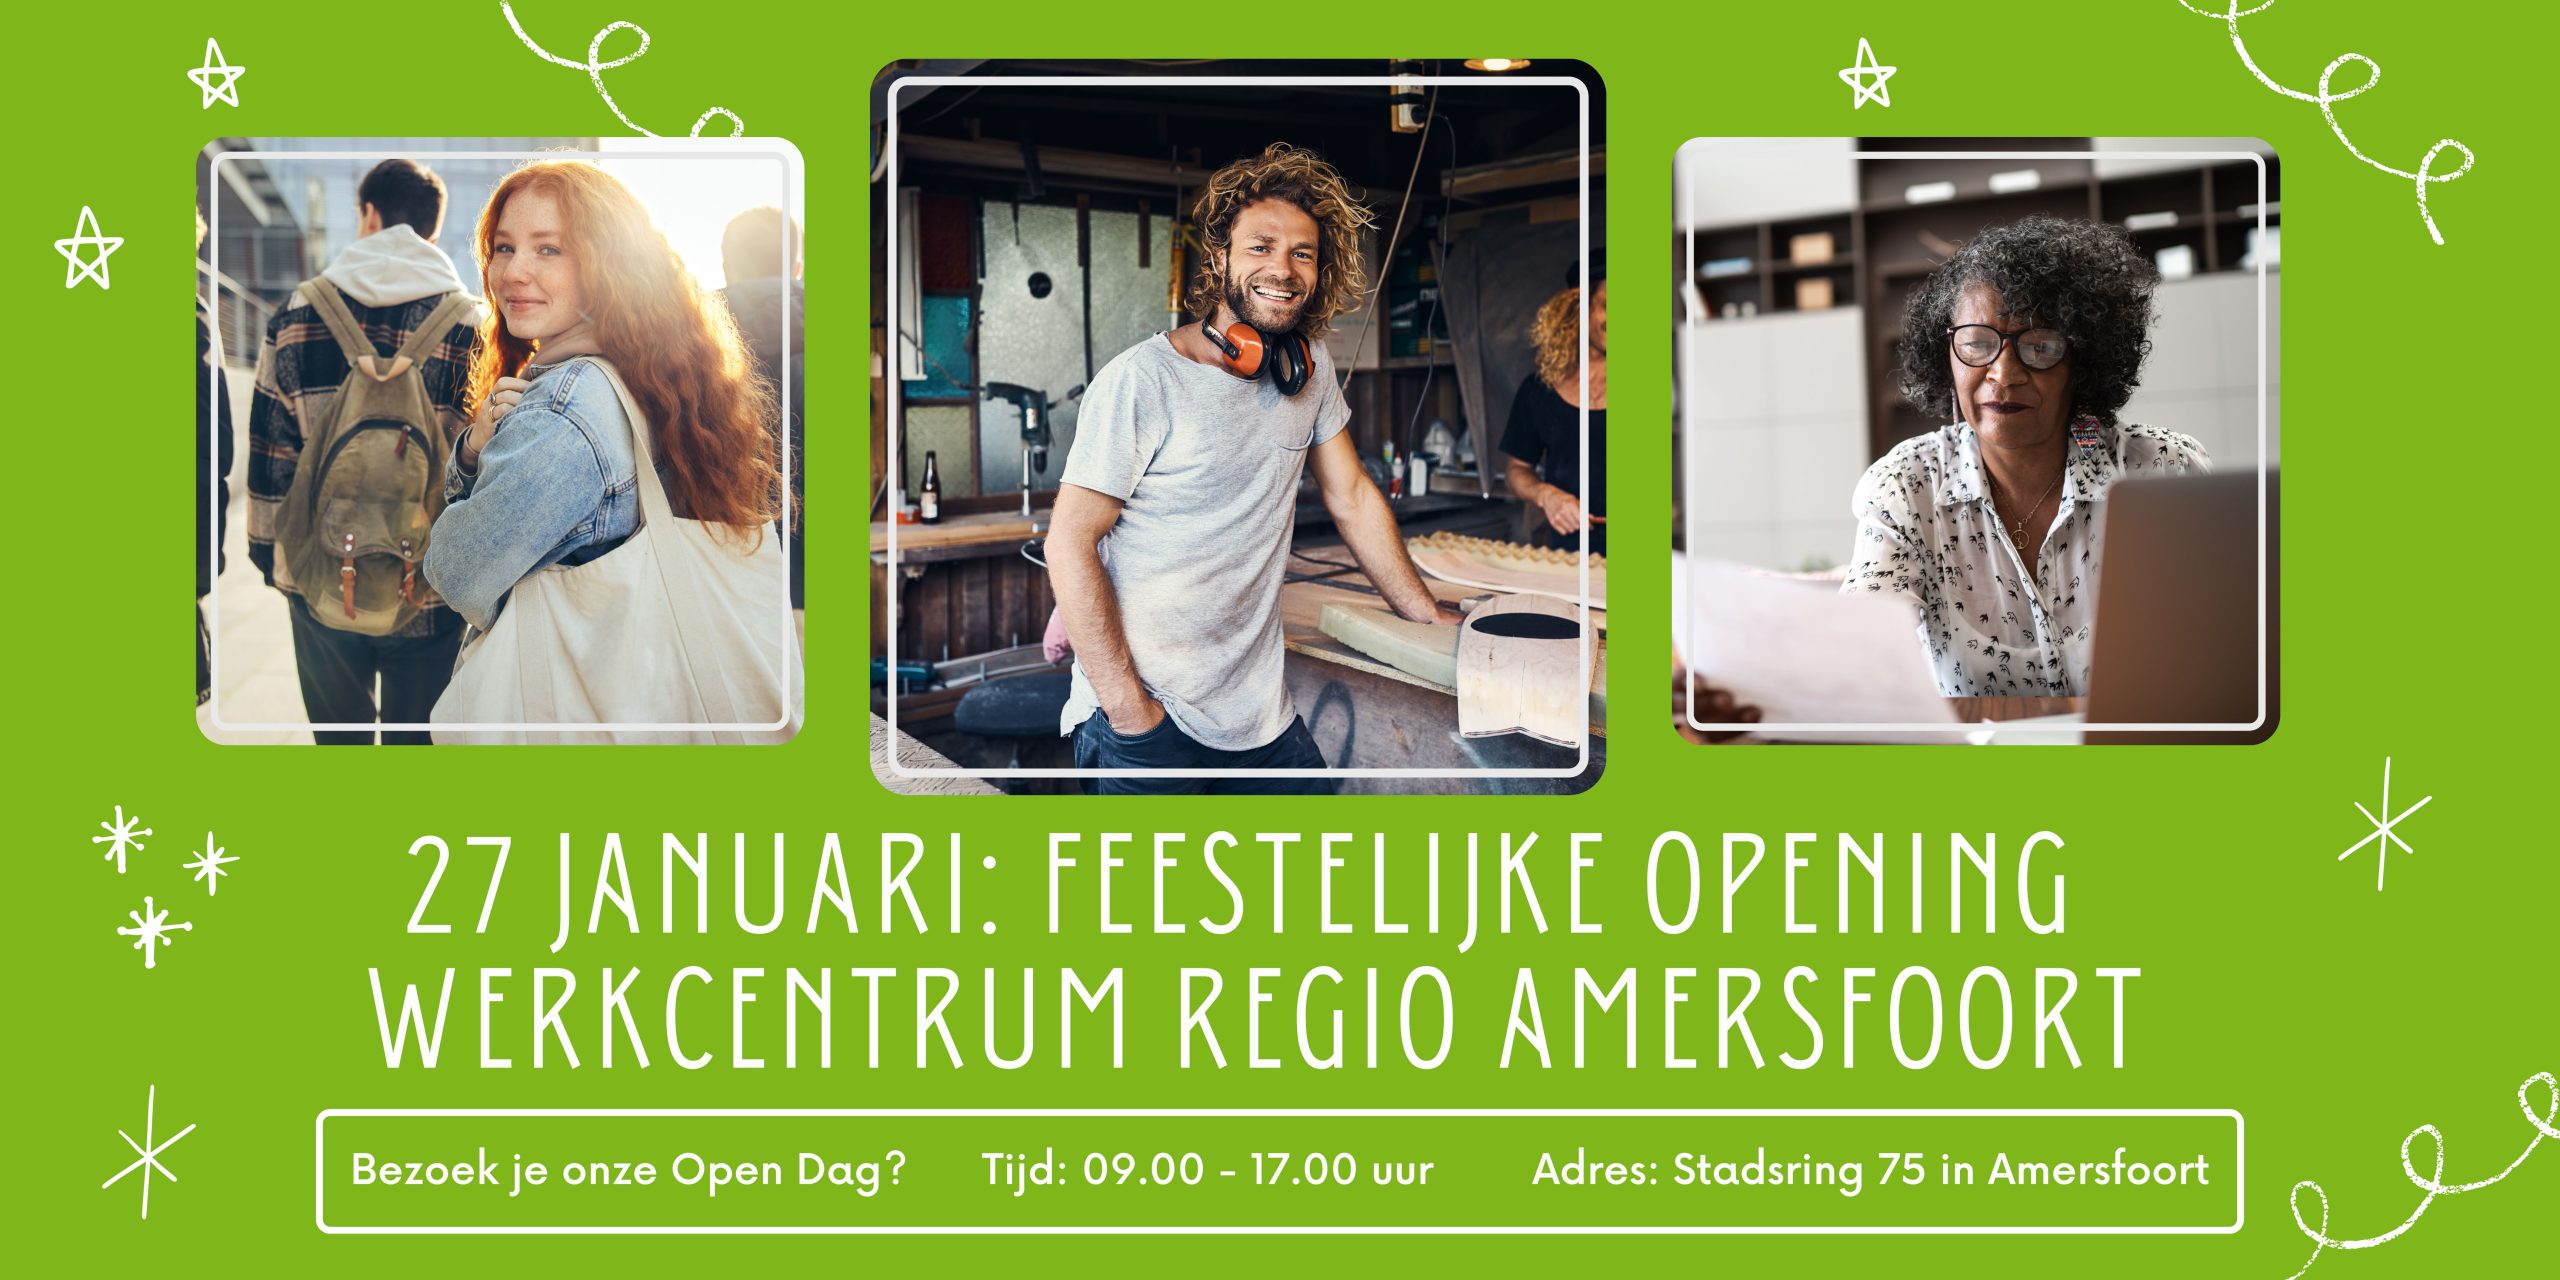 Feestelijke opening Werkcentrum regio Amersfoort